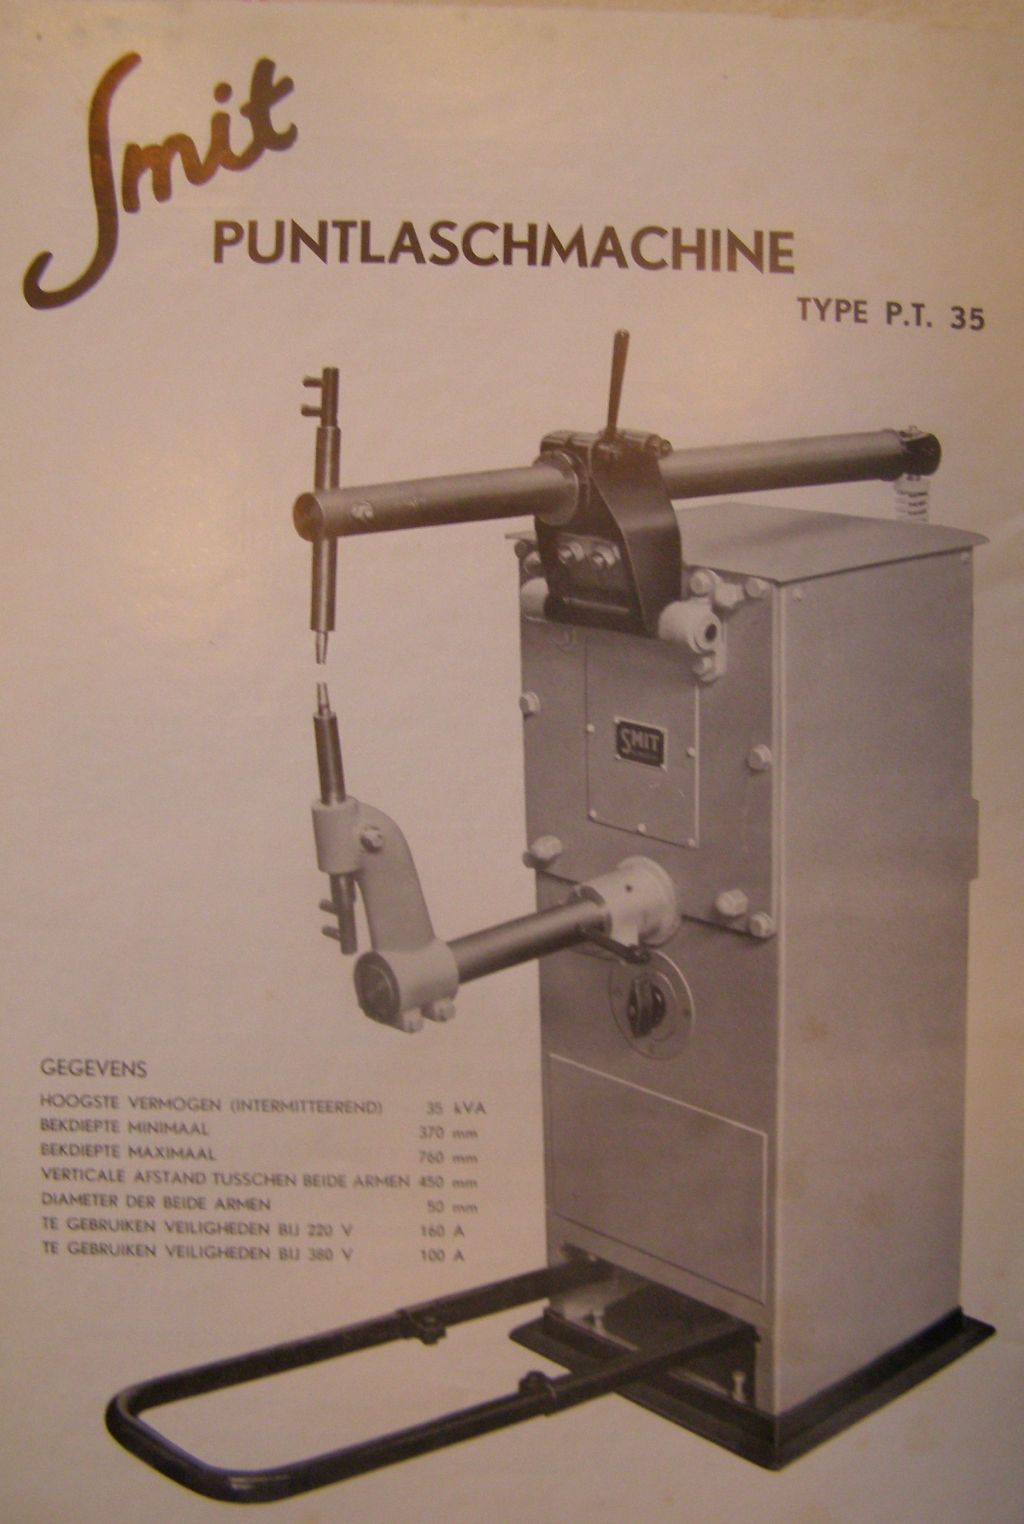 smitpuntlaschmachine1940